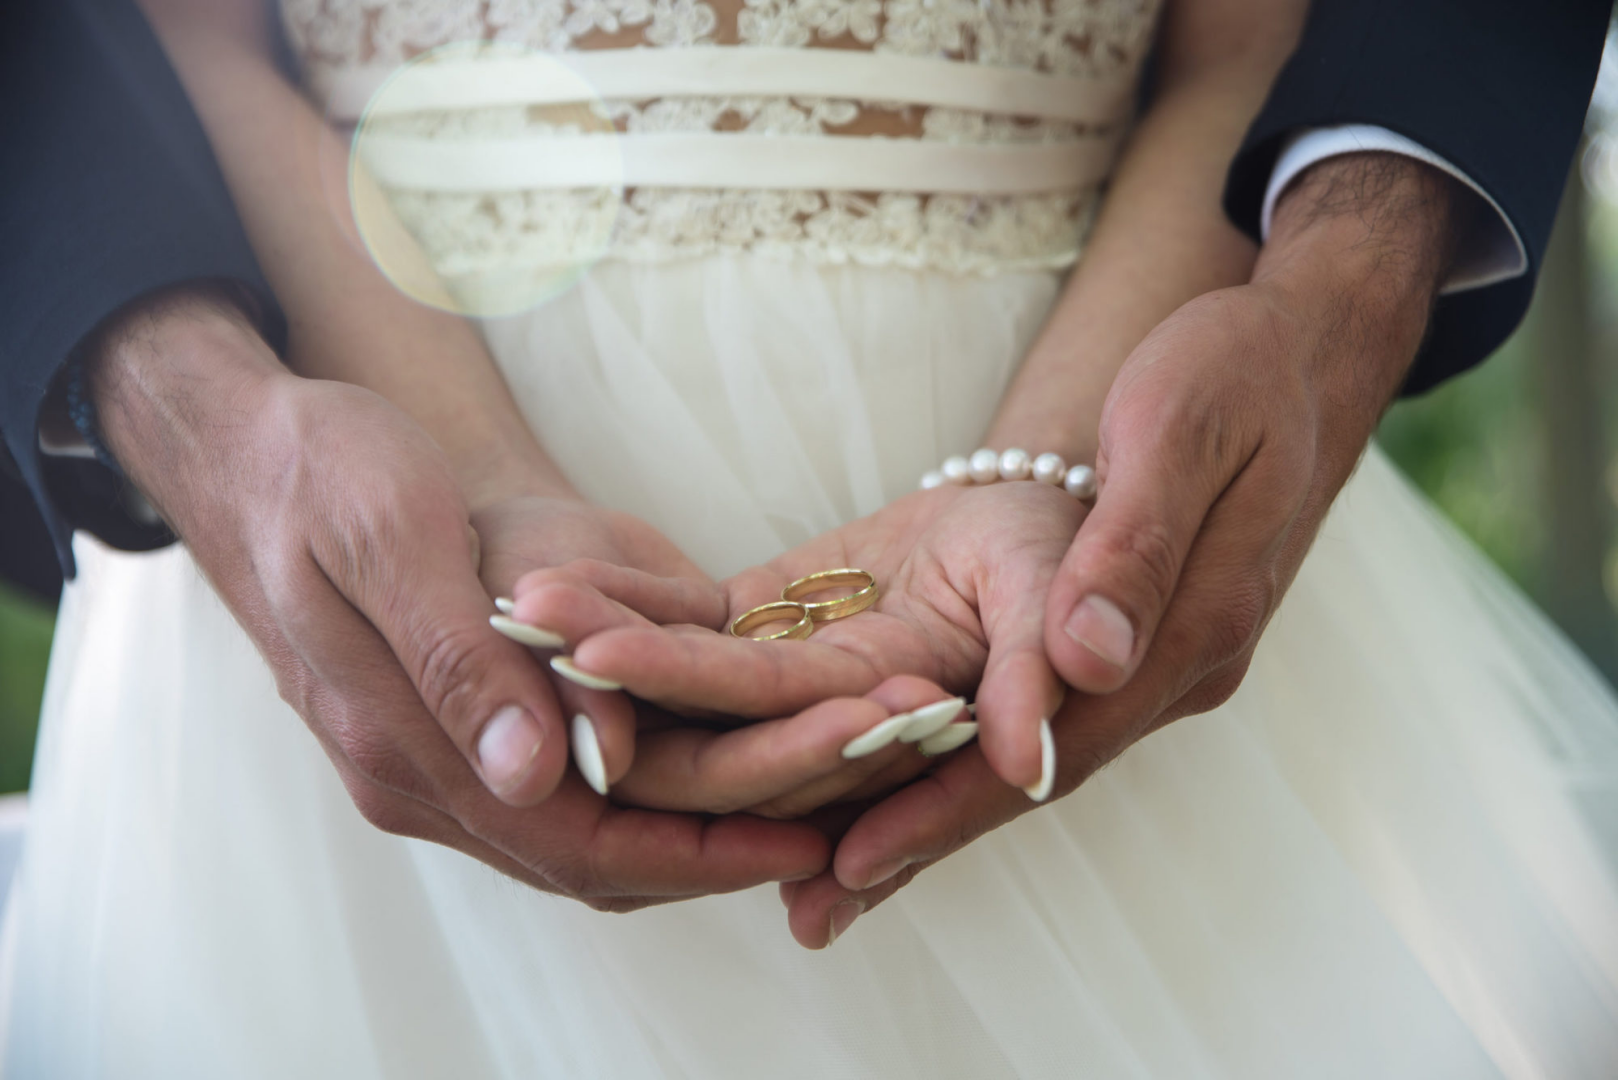 Брак. Обручальные кольца на руках жениха и невесты. Свадьба руки с кольцами. Фото обручальных колец на руках жениха и невесты.